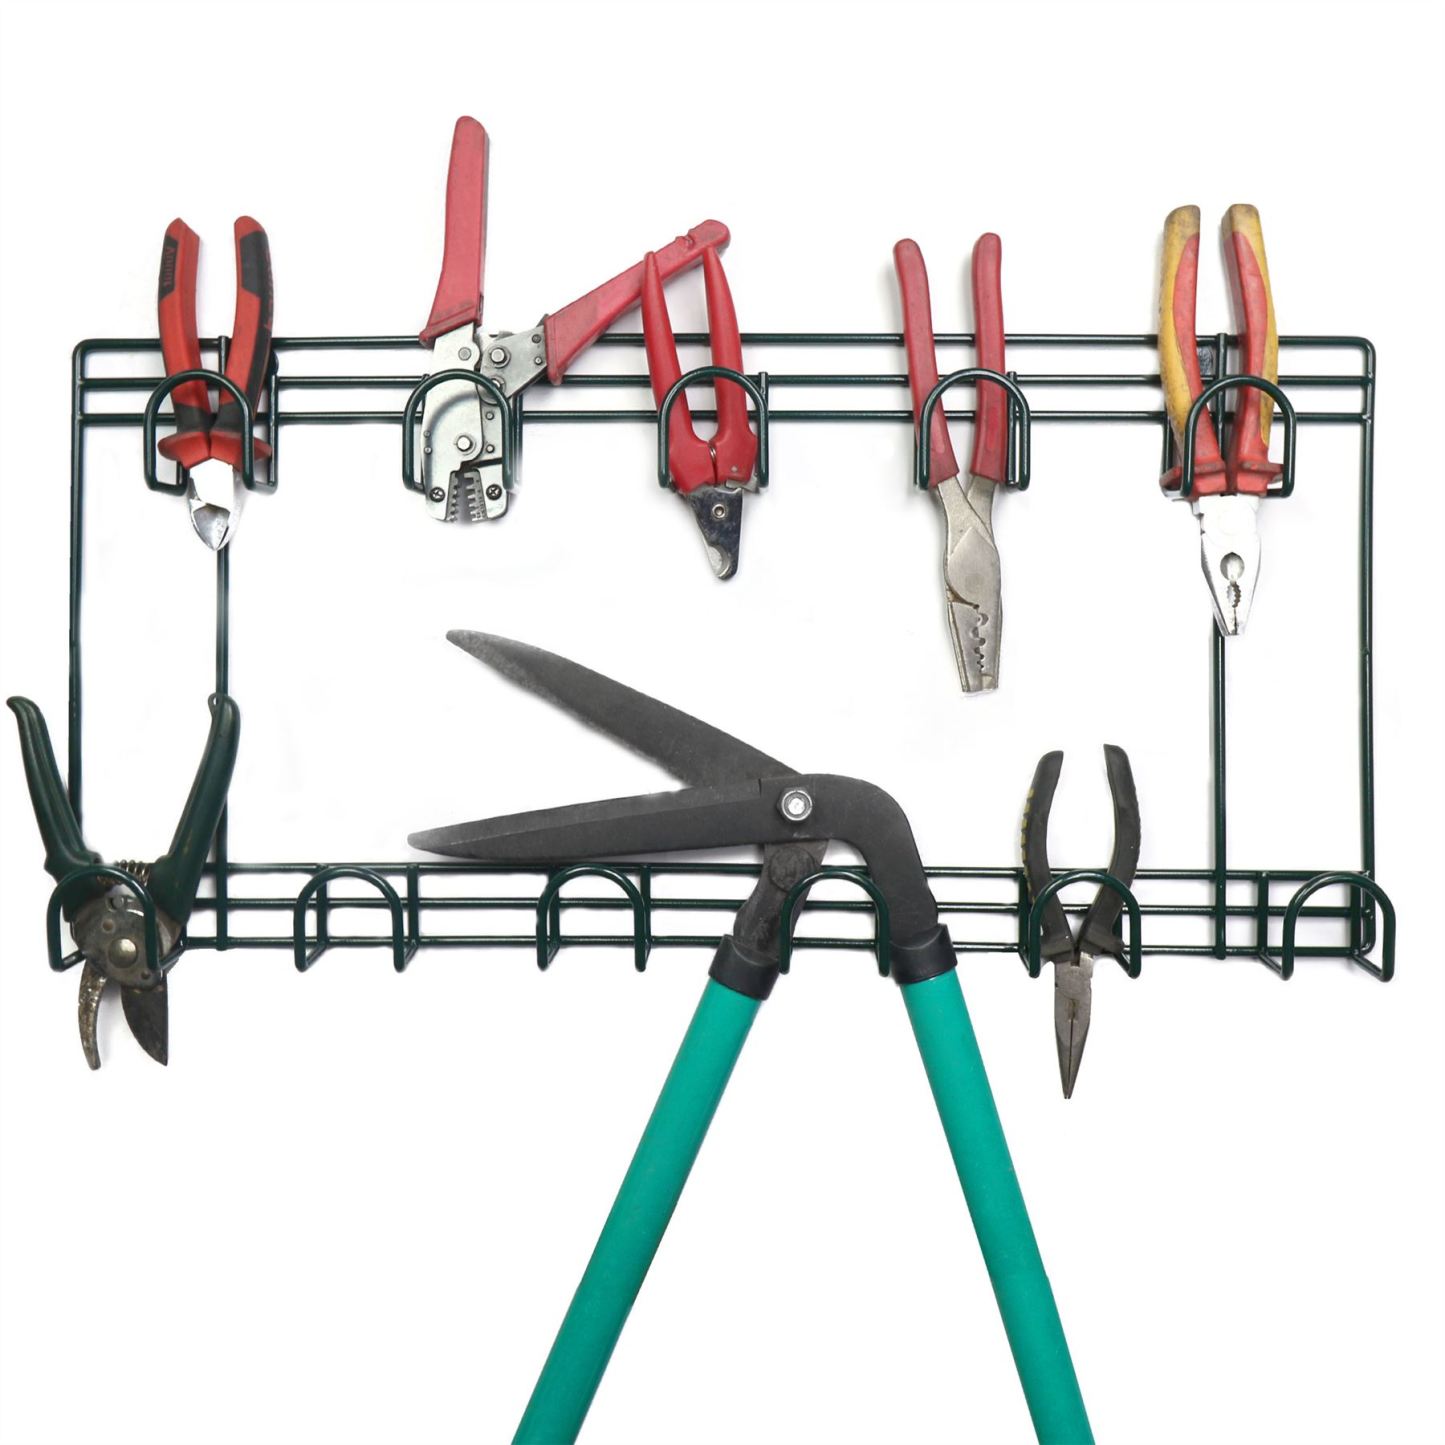 Garden Tool Rack | M&W